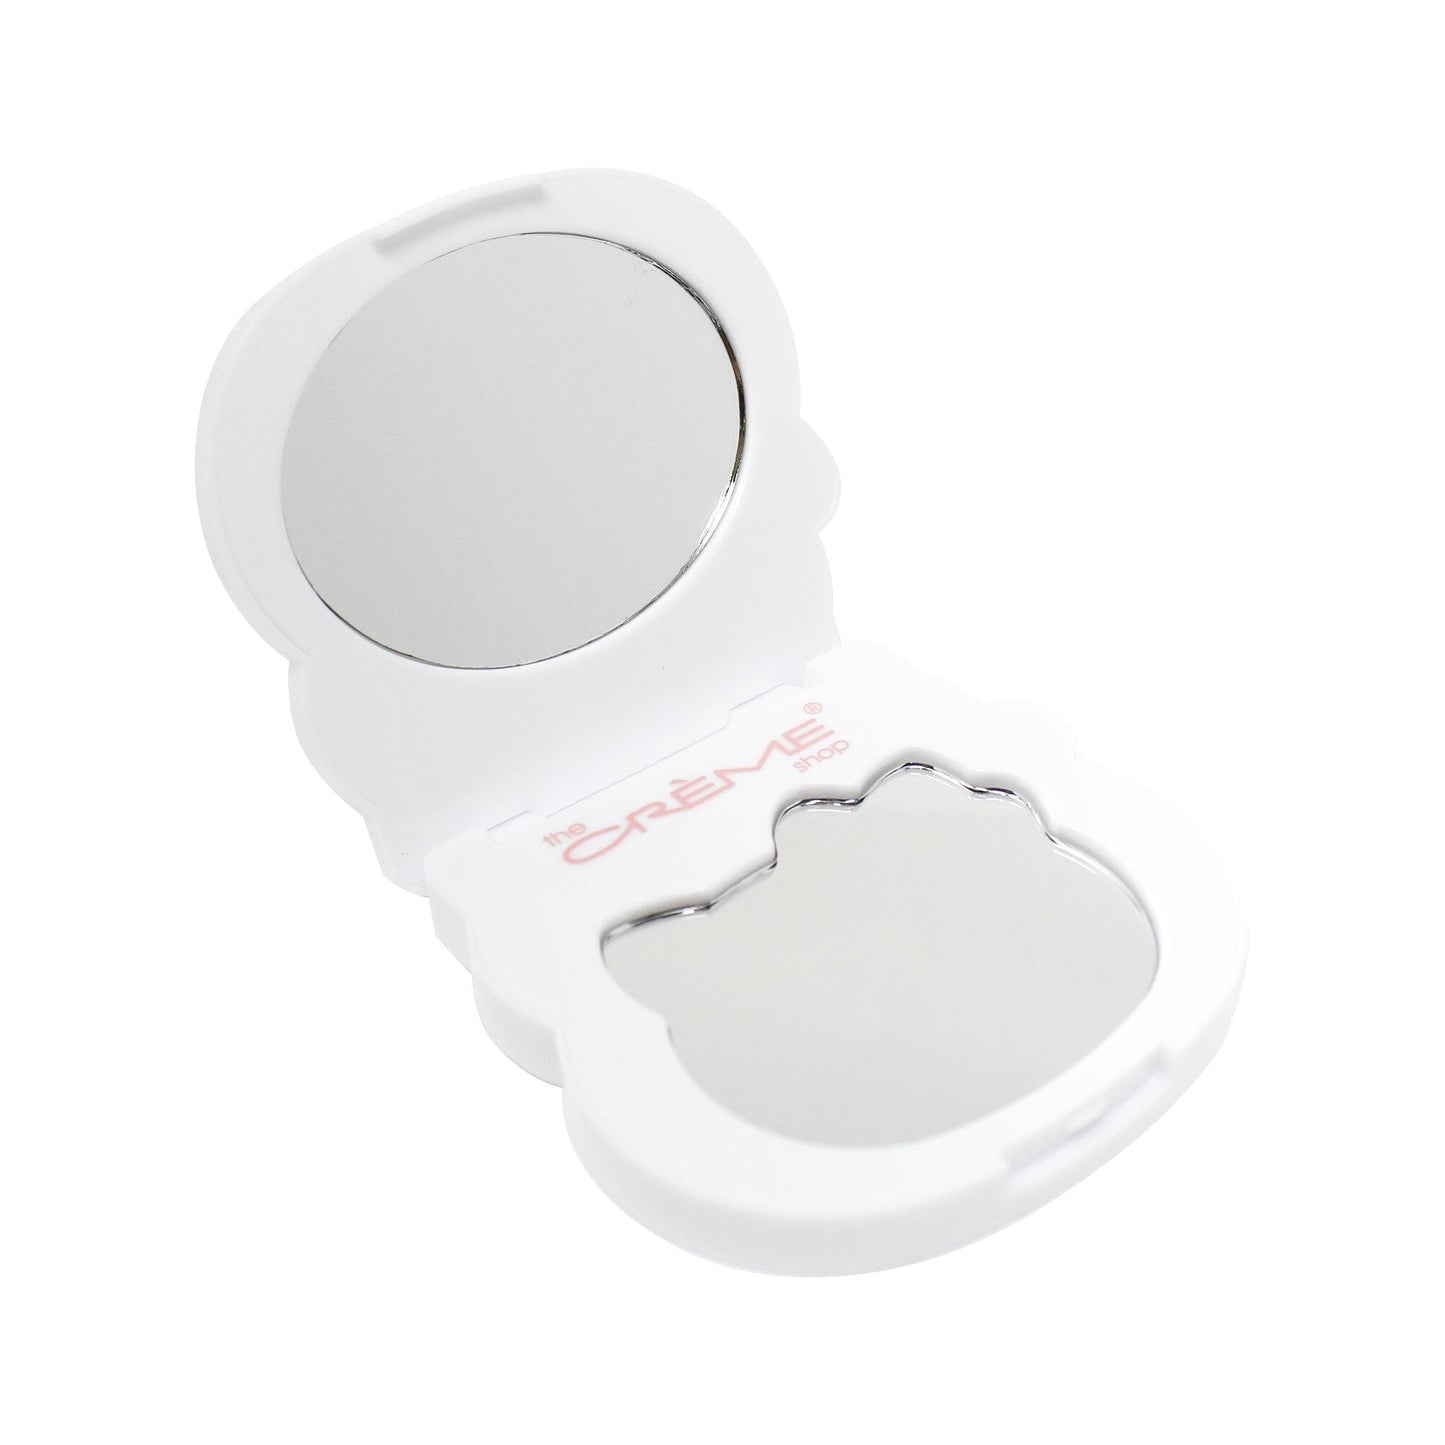 Hello Kitty On-The-Go Compact Mirror Compact Mirror The Crème Shop x Sanrio 